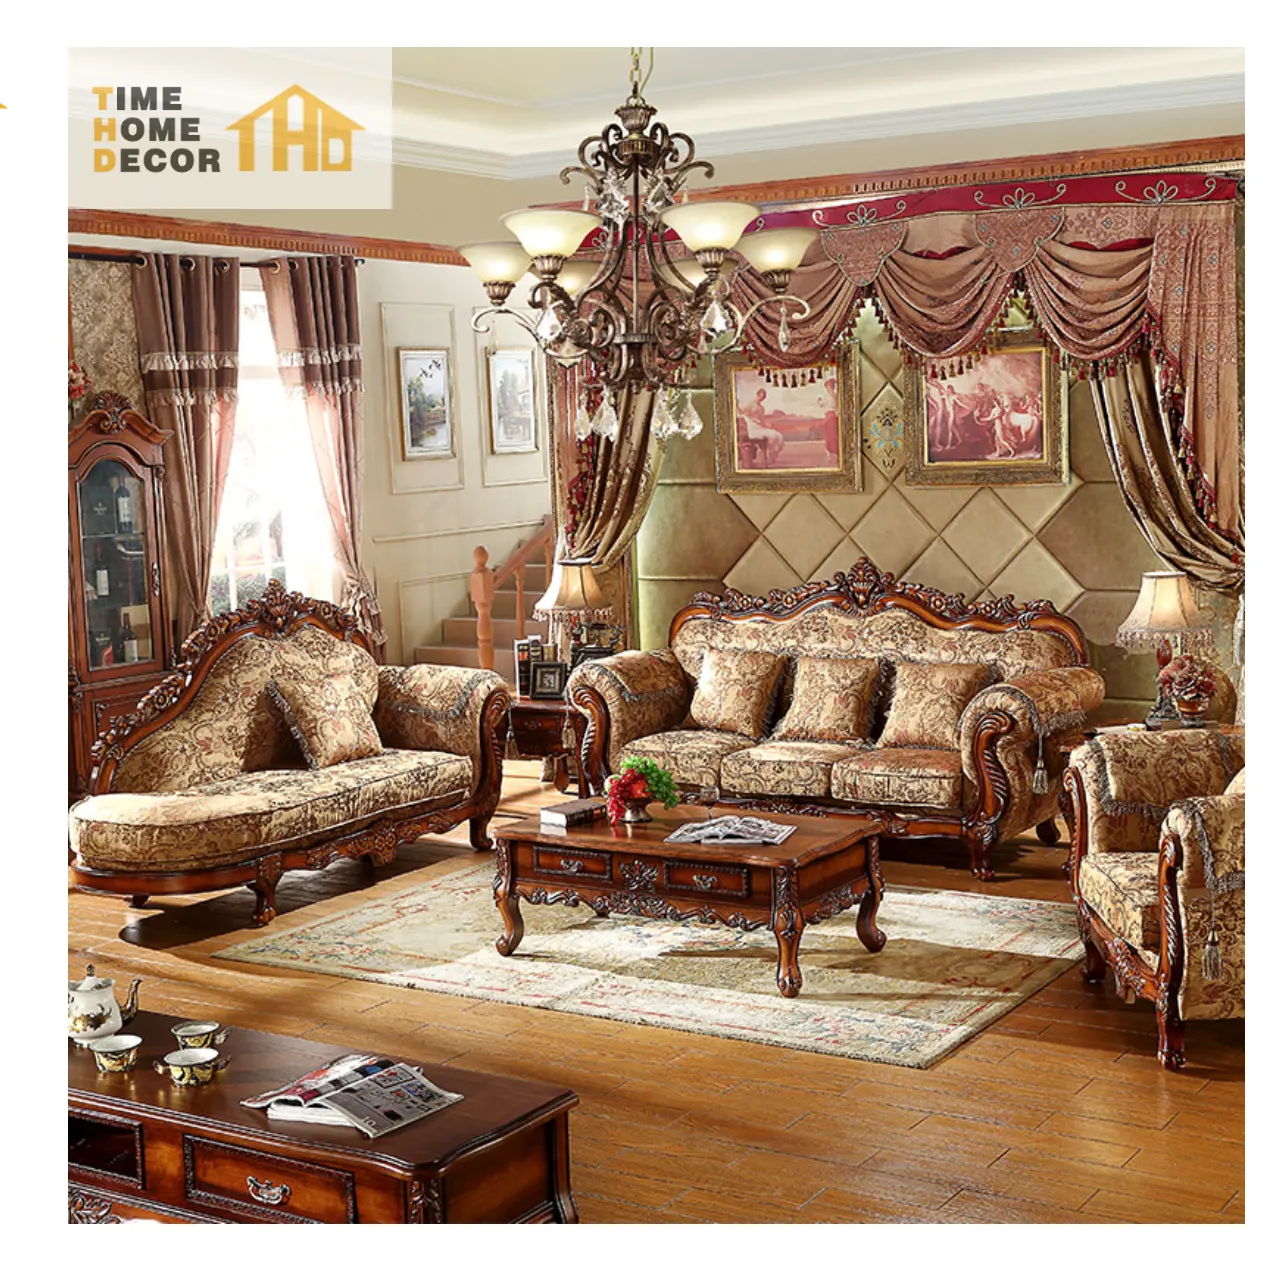 مجموعة أريكة 1+2+3 مصنوعة من خشب عتيق متين ومكونة من 7 مقاعد أريكة فاخرة كلاسيكية على الطراز العربي والشرقي الأوسط والأوروبي